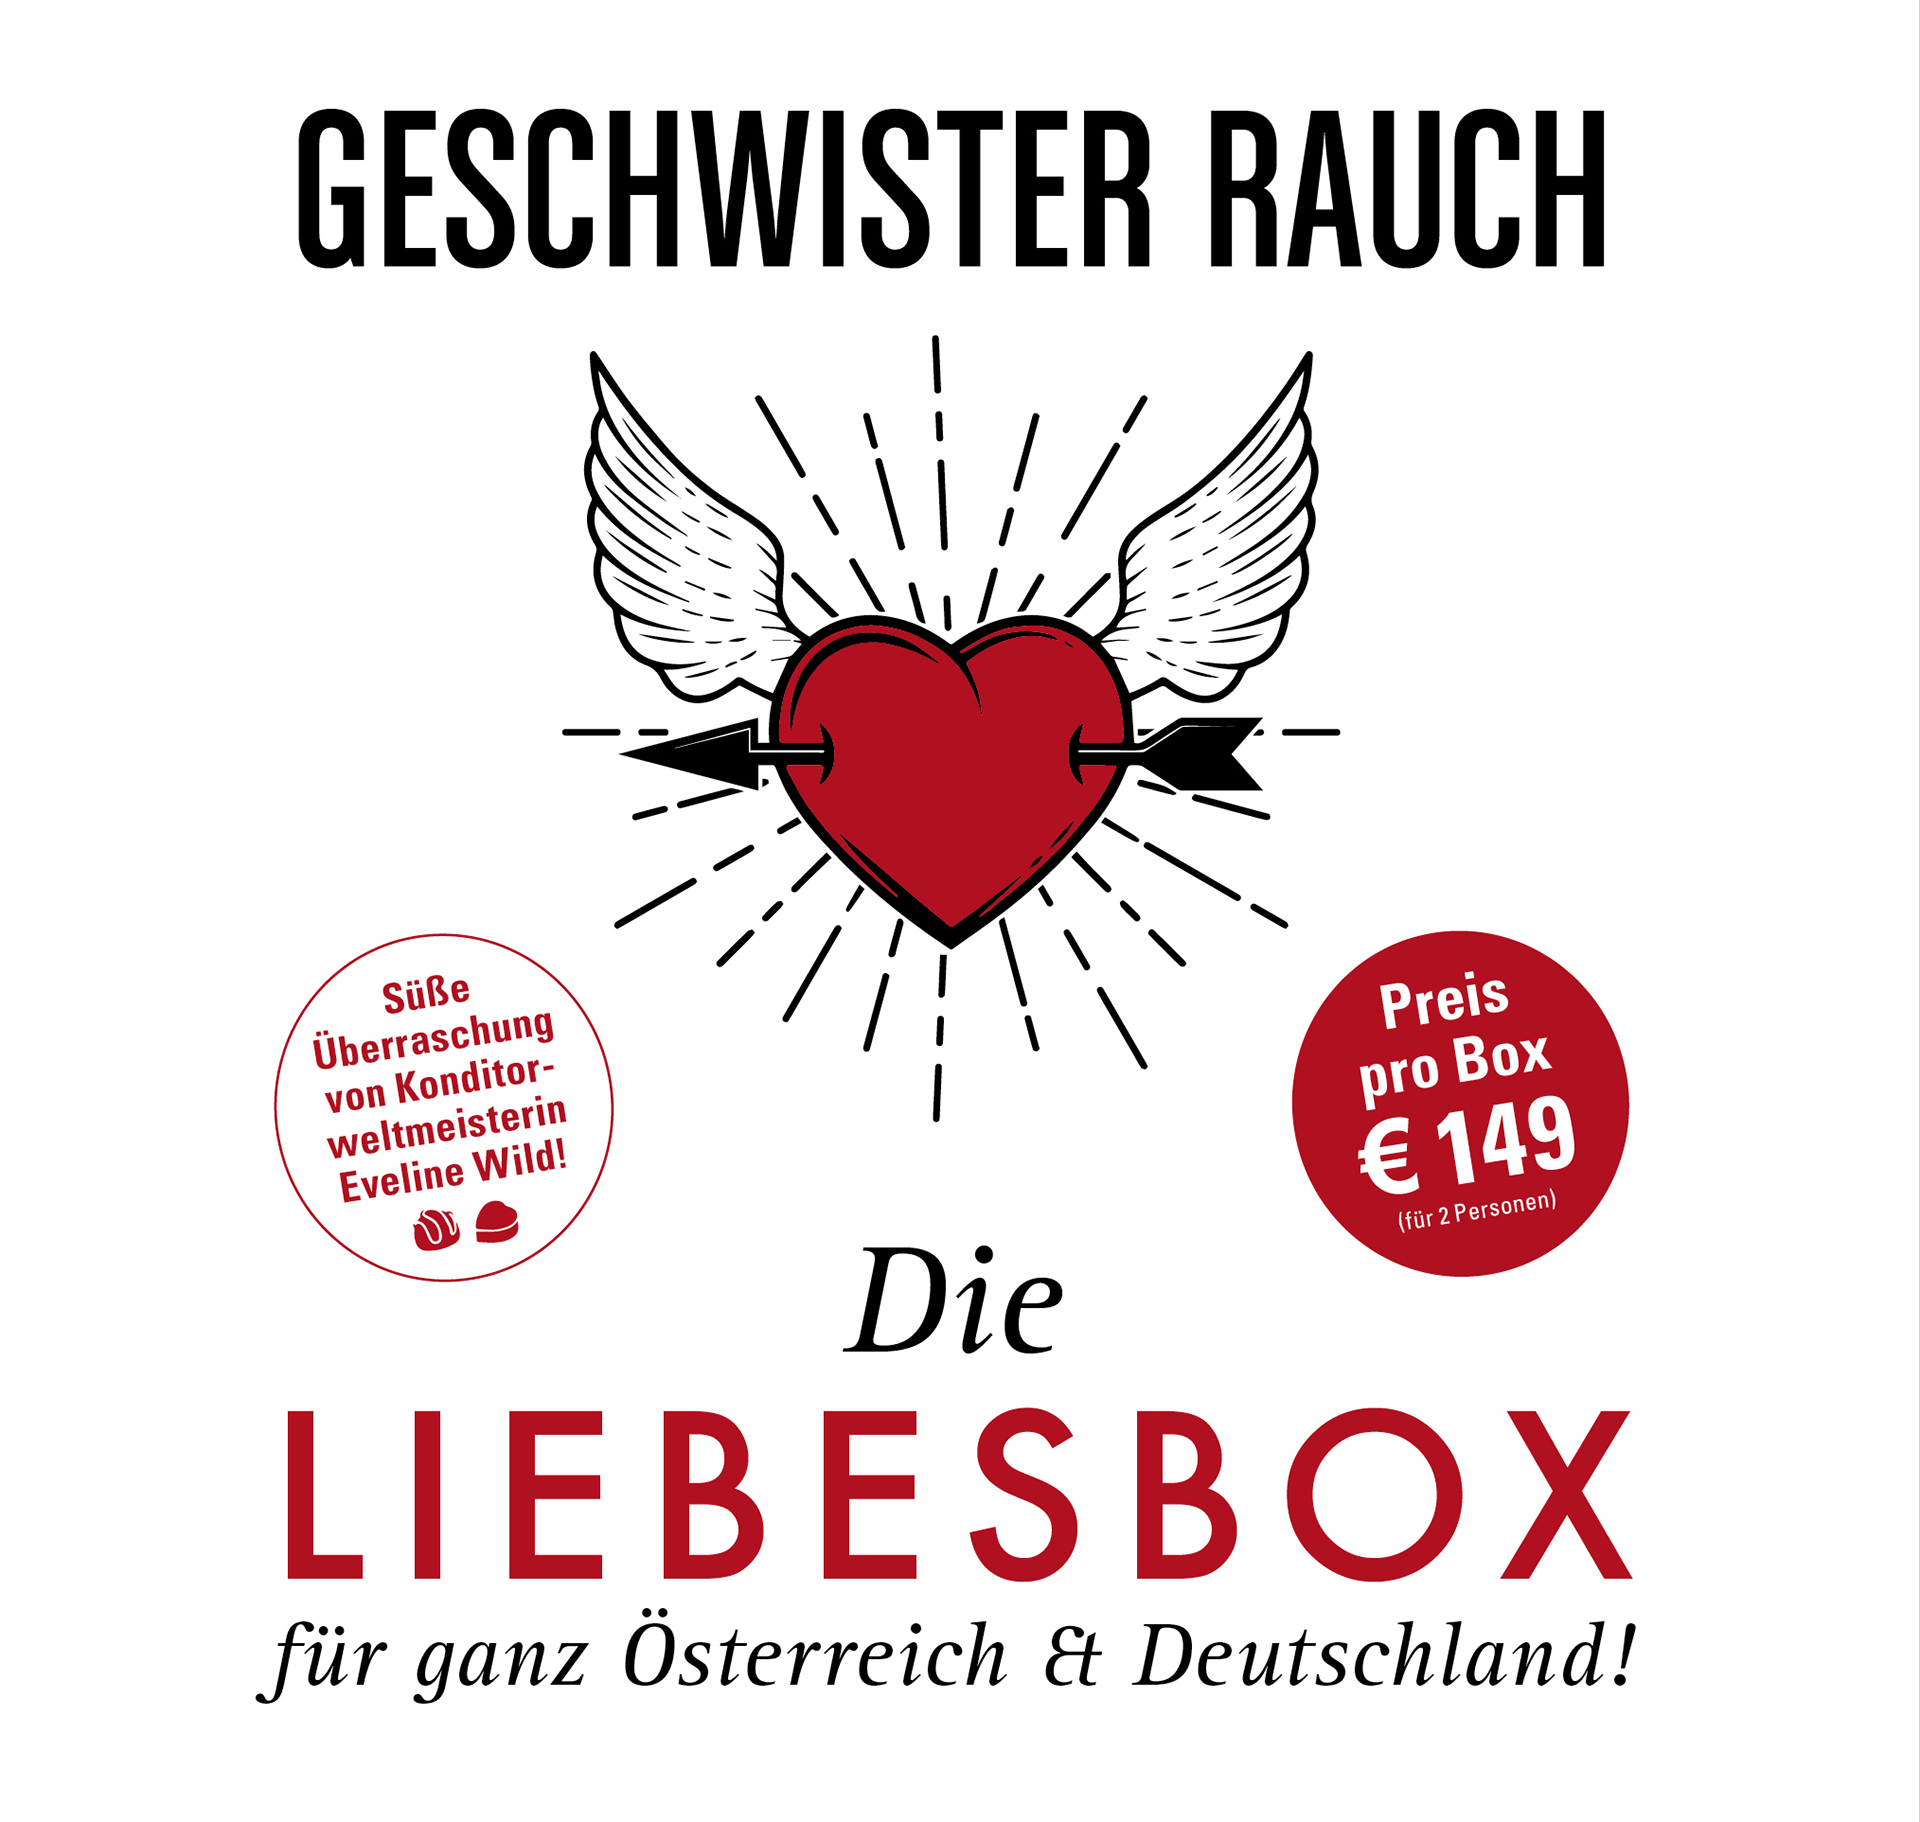 Die Liebesbox für ganz Österreich & Deutschland - Preis pro Box € 149 (2 Personen)